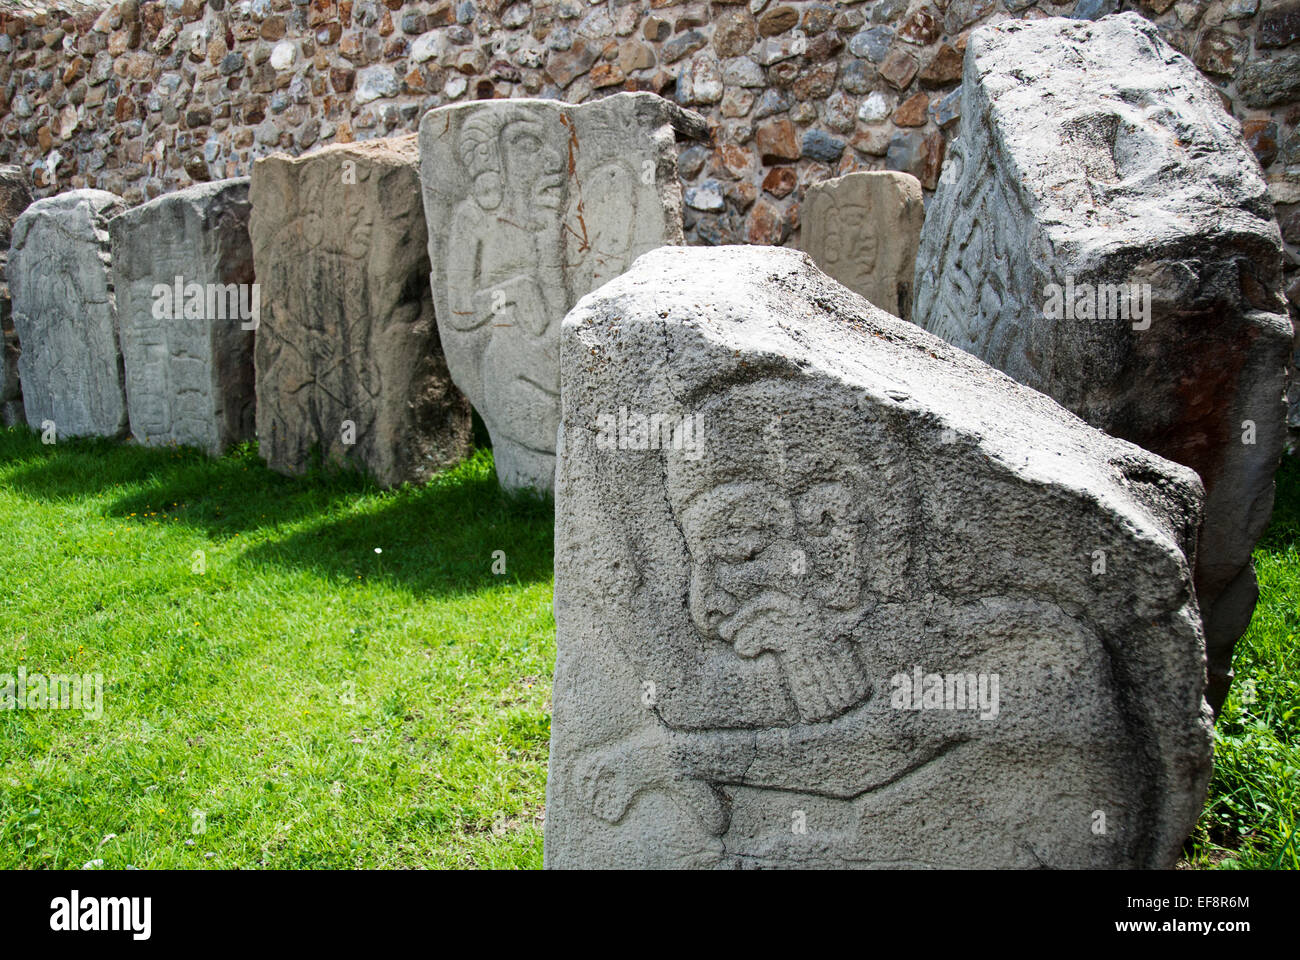 Messico Oaxaca, Santa Cruz Xoxocotlan, Monte Alban, lastre di pietra con le sculture esposte sull'erba Foto Stock